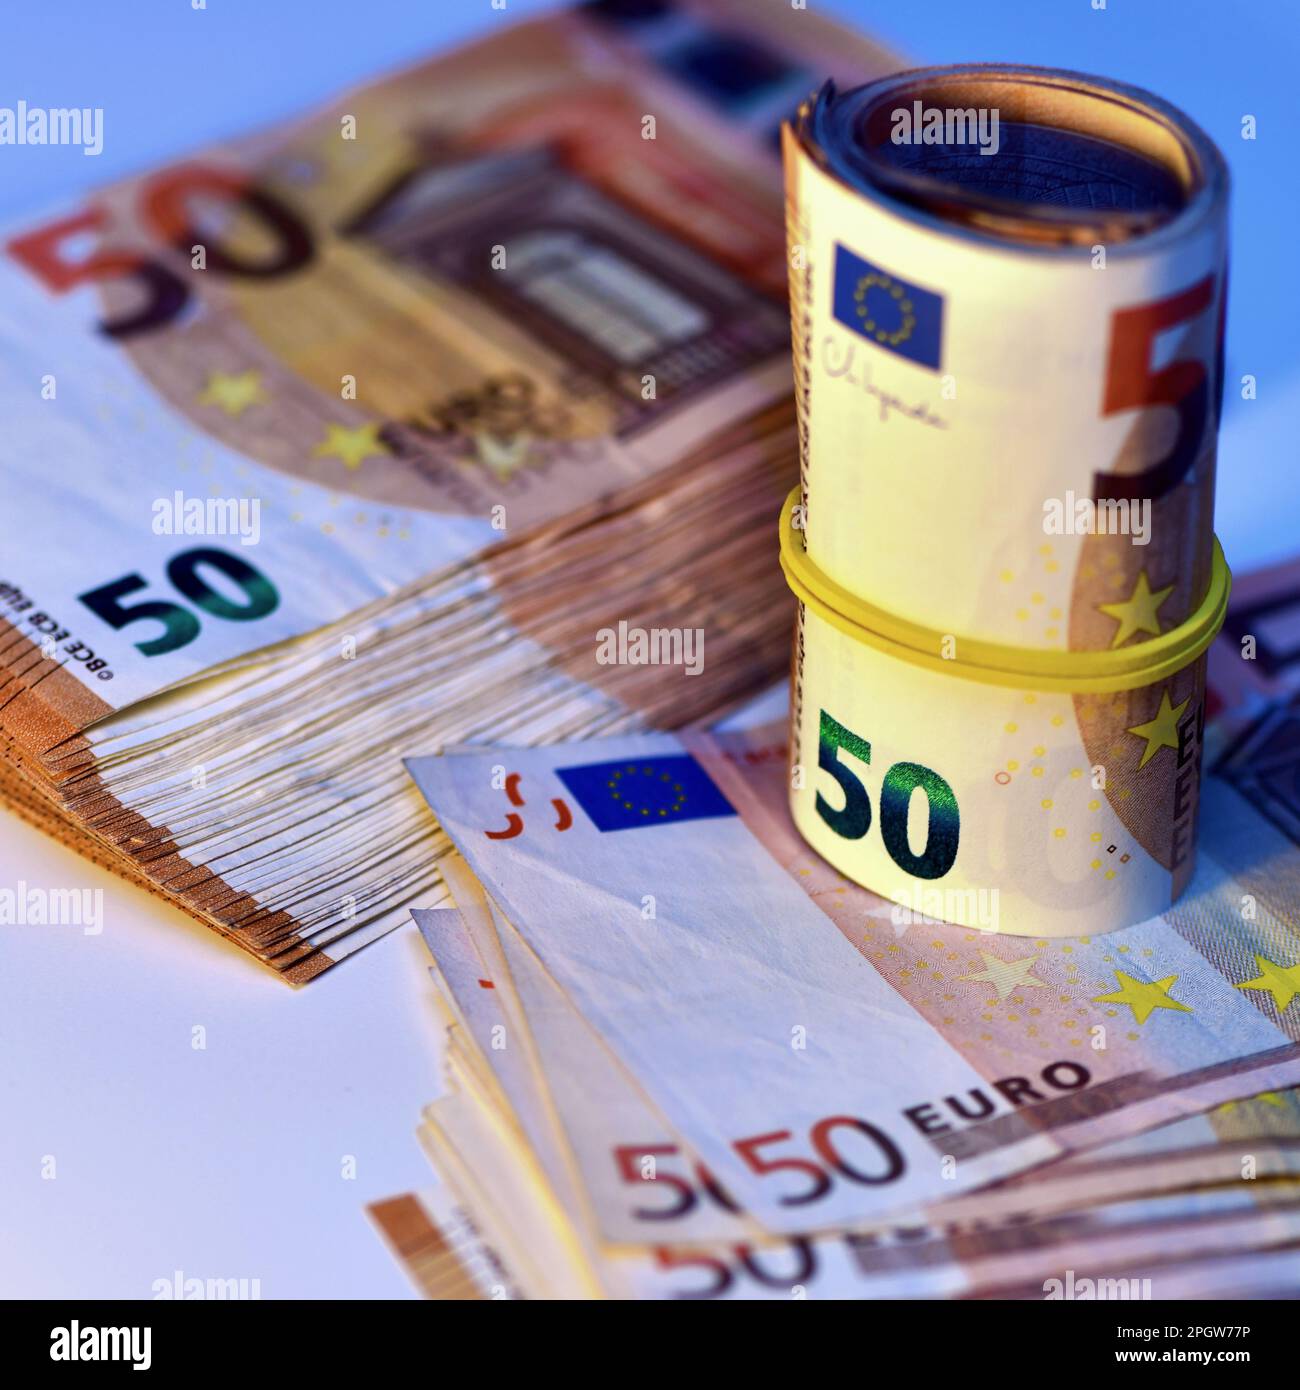 Concetto di molti euro: Un mucchio di banconote arrotolate da 50 euro giacenti su uno sfondo bianco, pila di banconote da 50 euro background commerciale Foto Stock